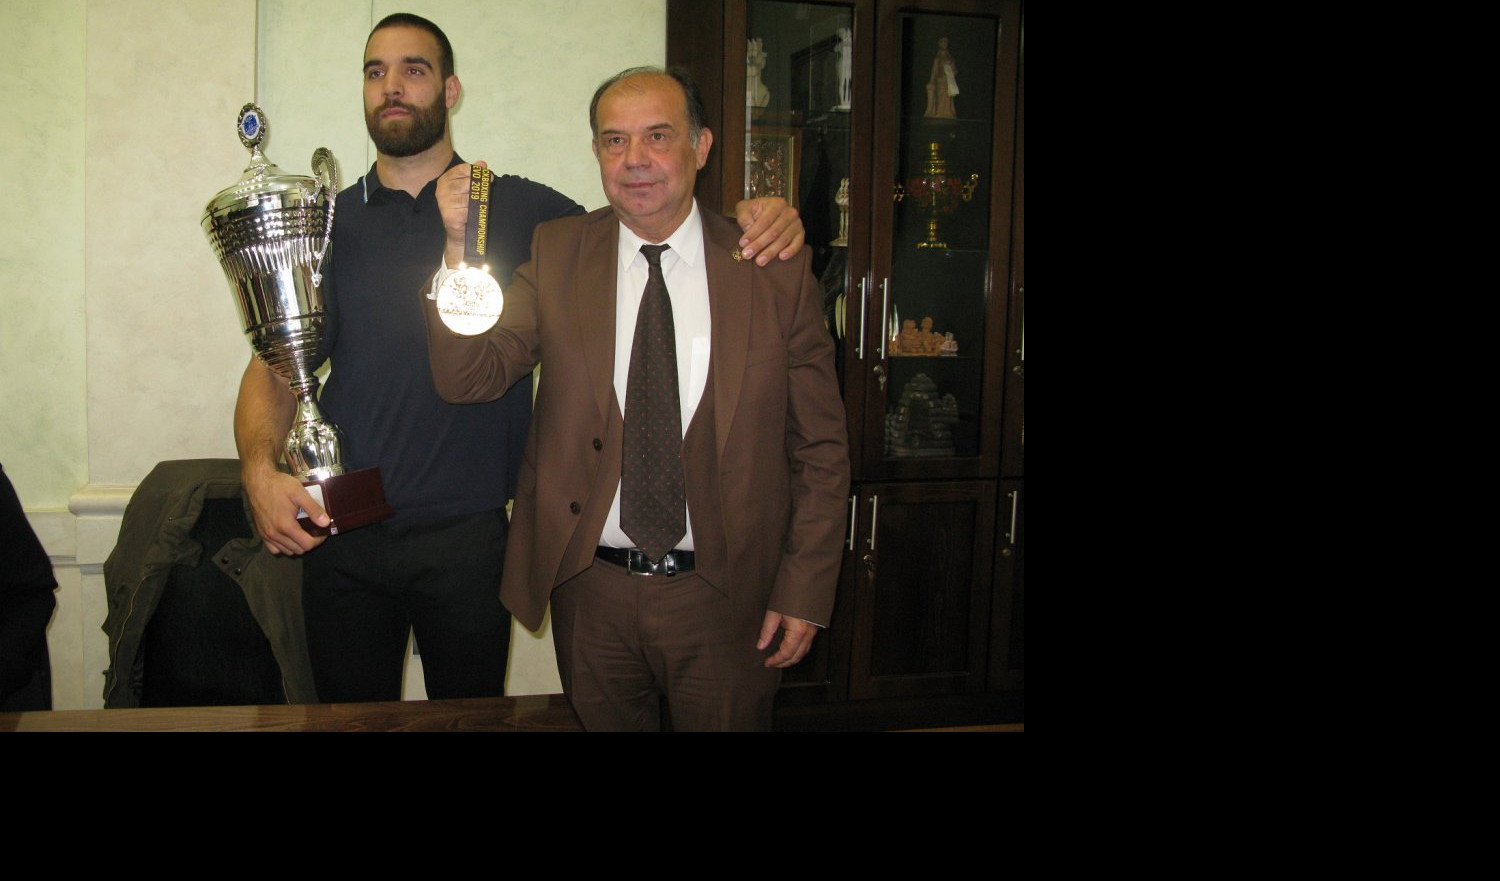 NAJBOLJI SMO NA SVETU! Gradonačelnik Užica primio i nagradio kik-boks šampiona Nikolu Filipovića (FOTO)